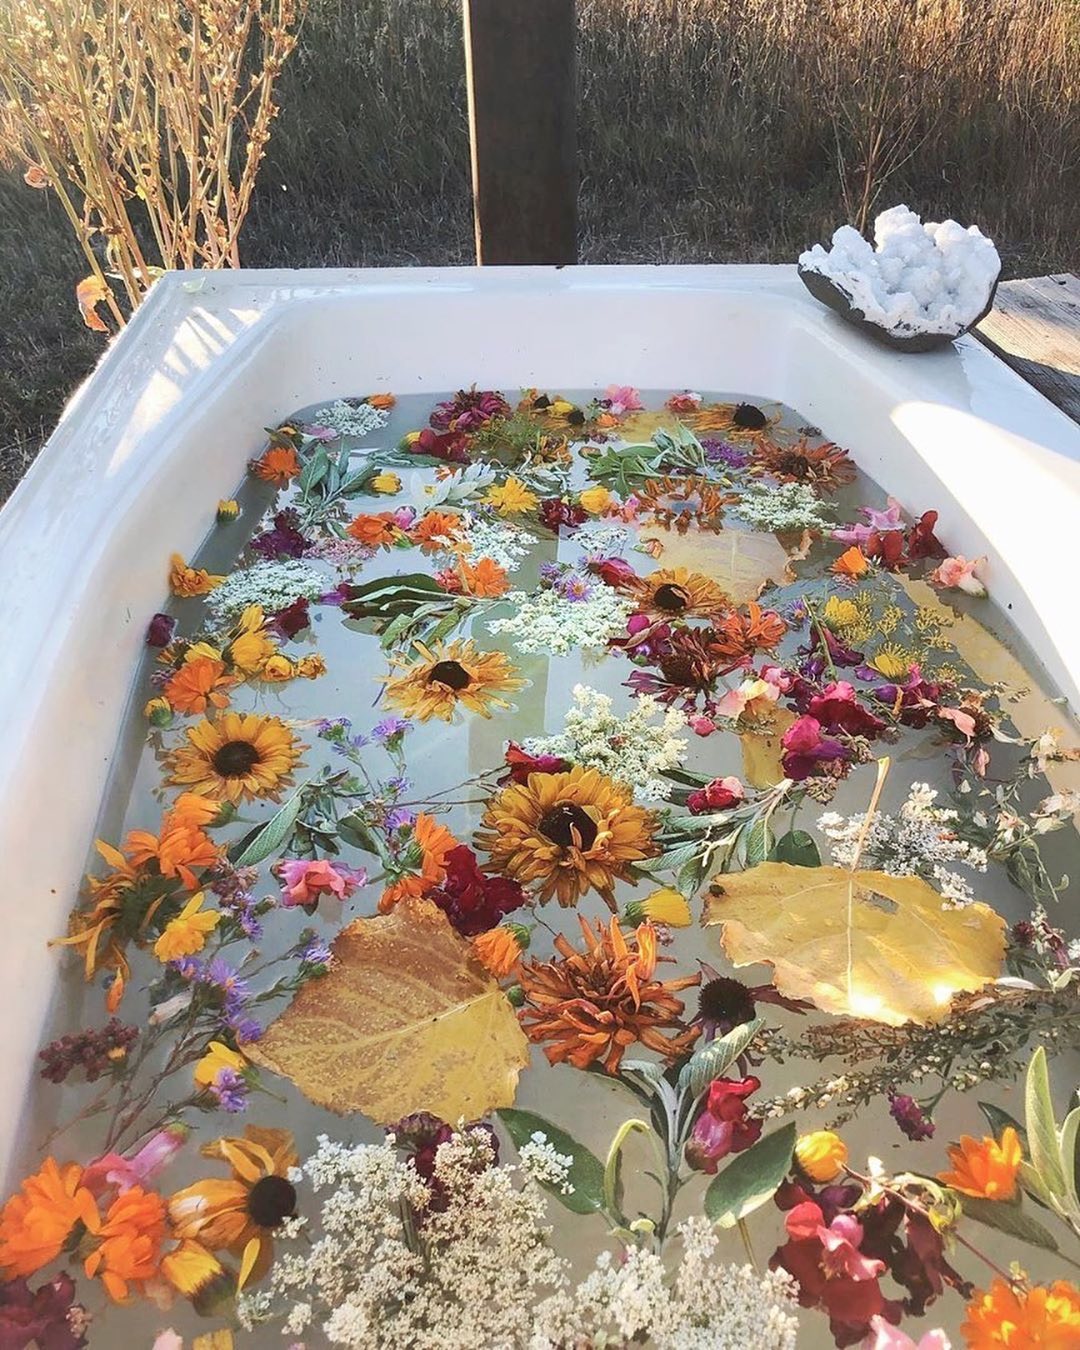 SHEIN.COM - Bath of our dreams! 🌼🌿 @plantfolk  #bathrituals #bathritual #flowerpower #flowerbath #plants